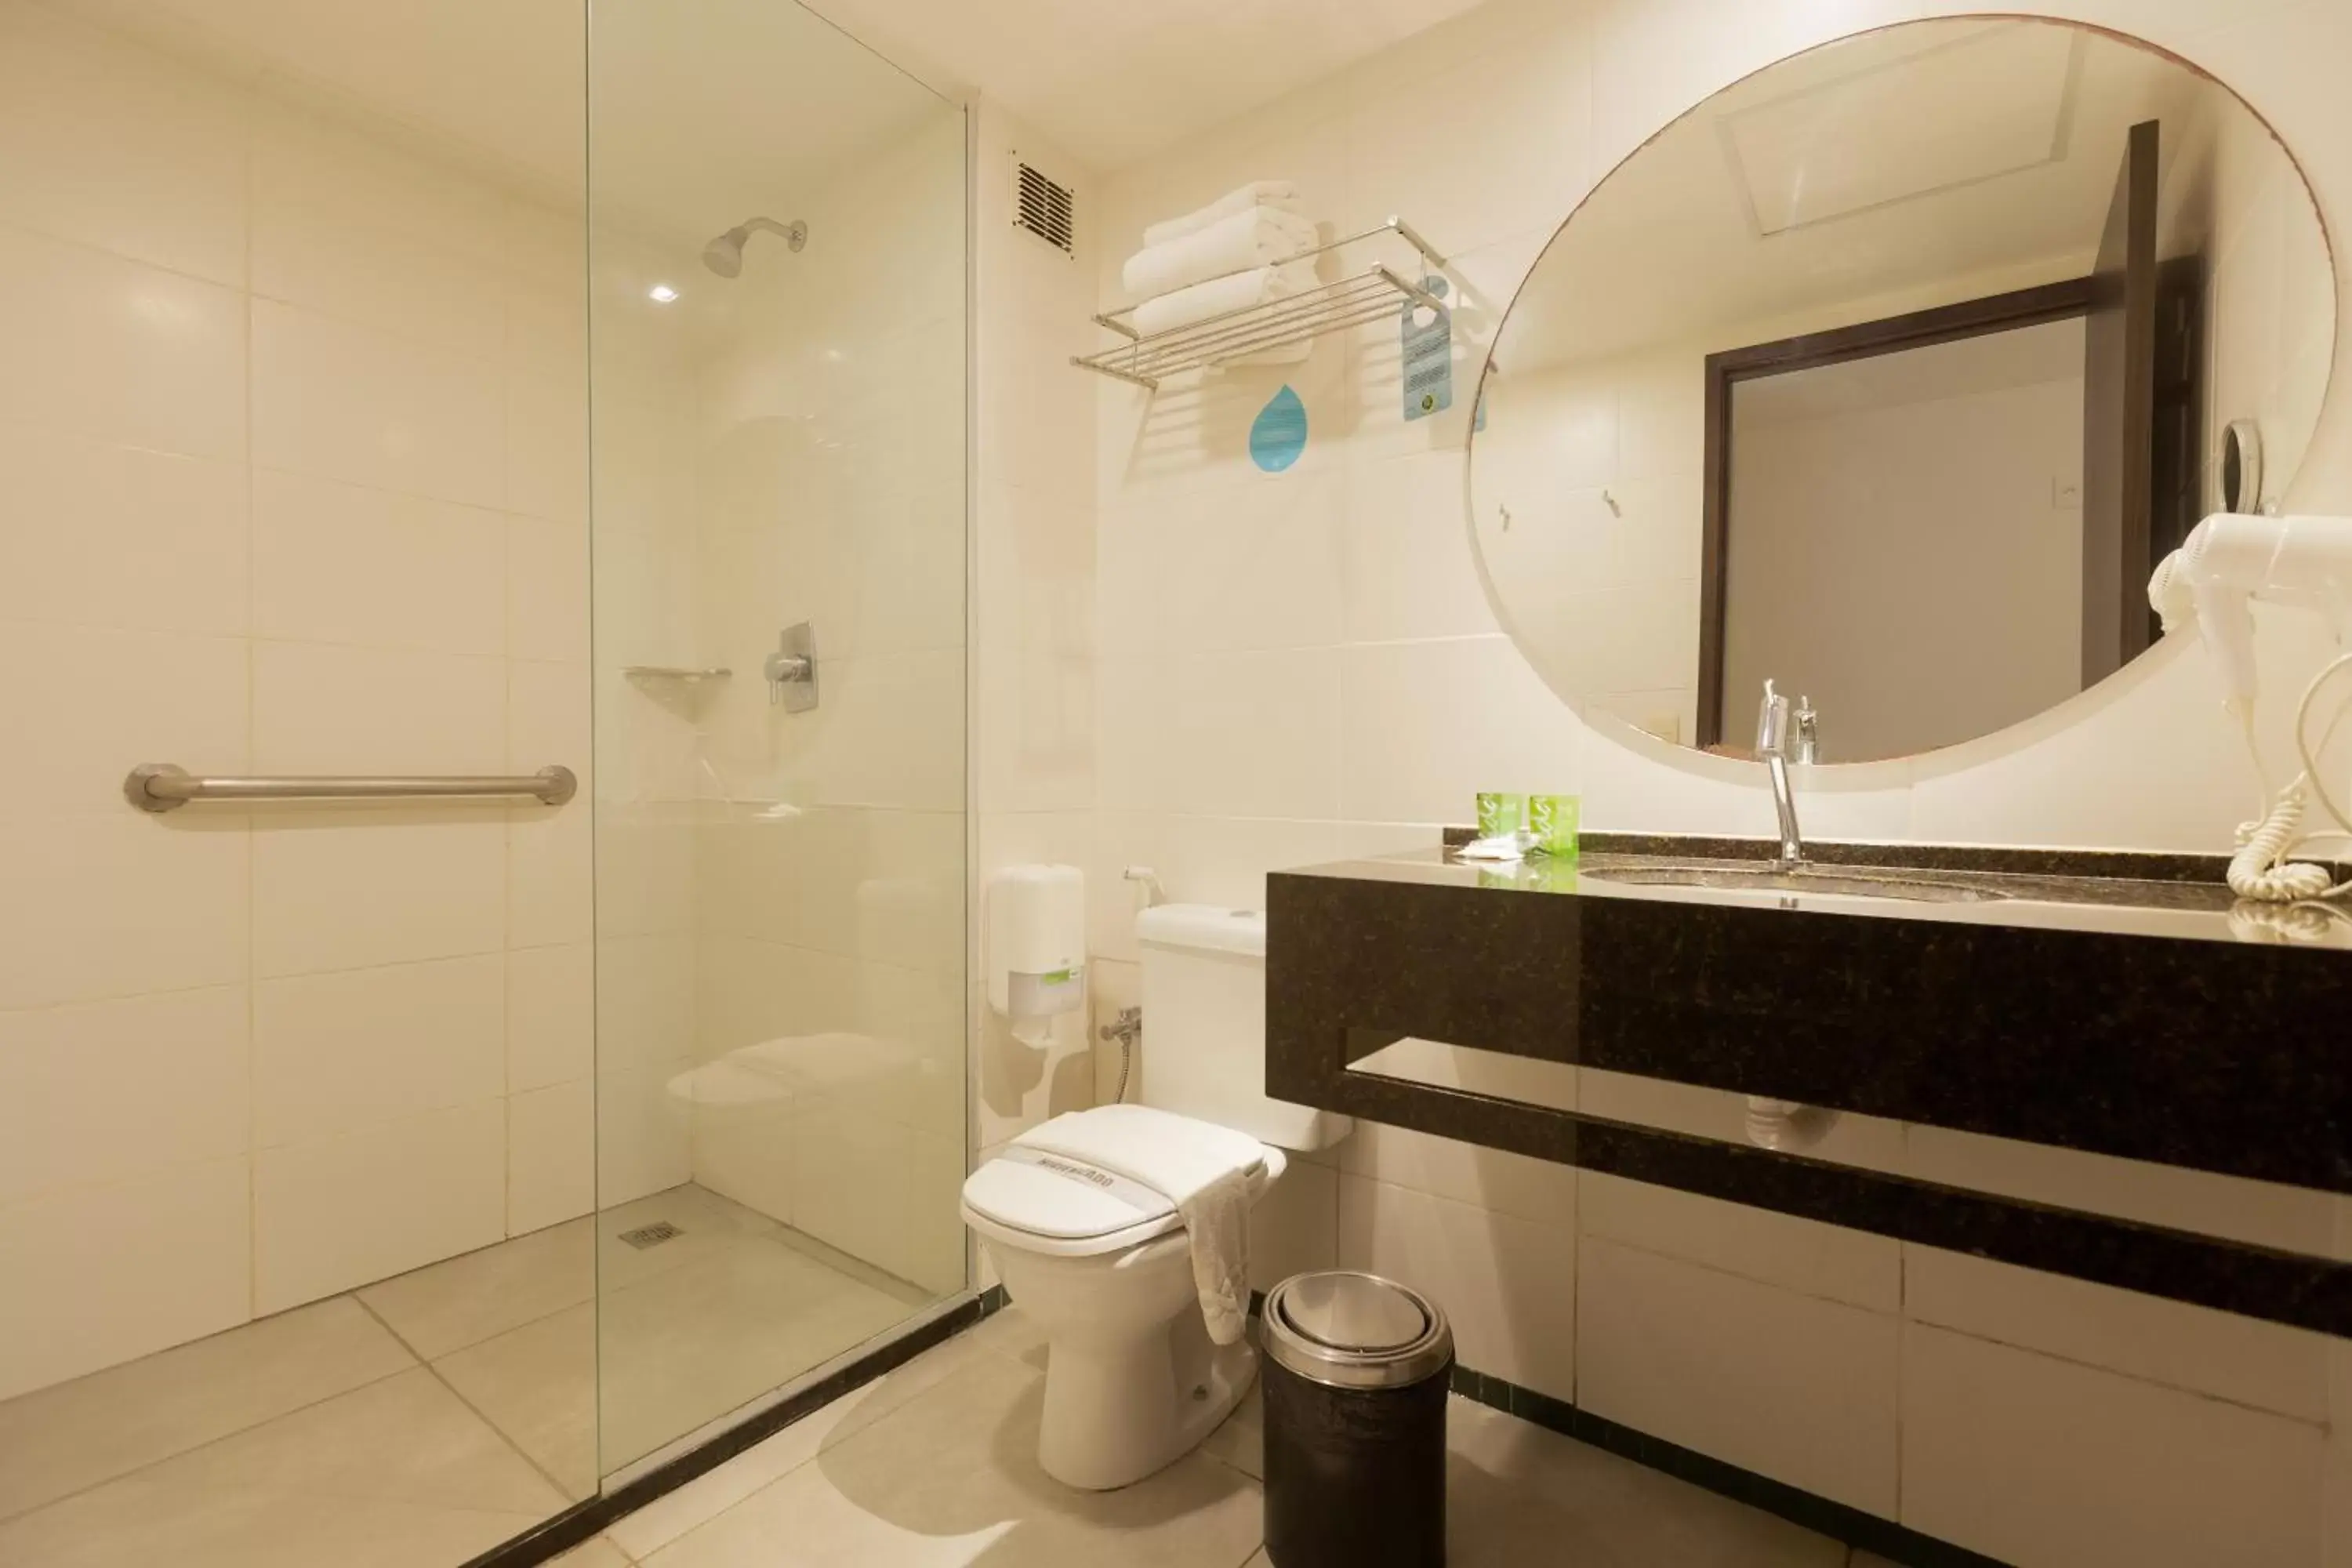 Bedroom, Bathroom in Ritz Suites Home Service